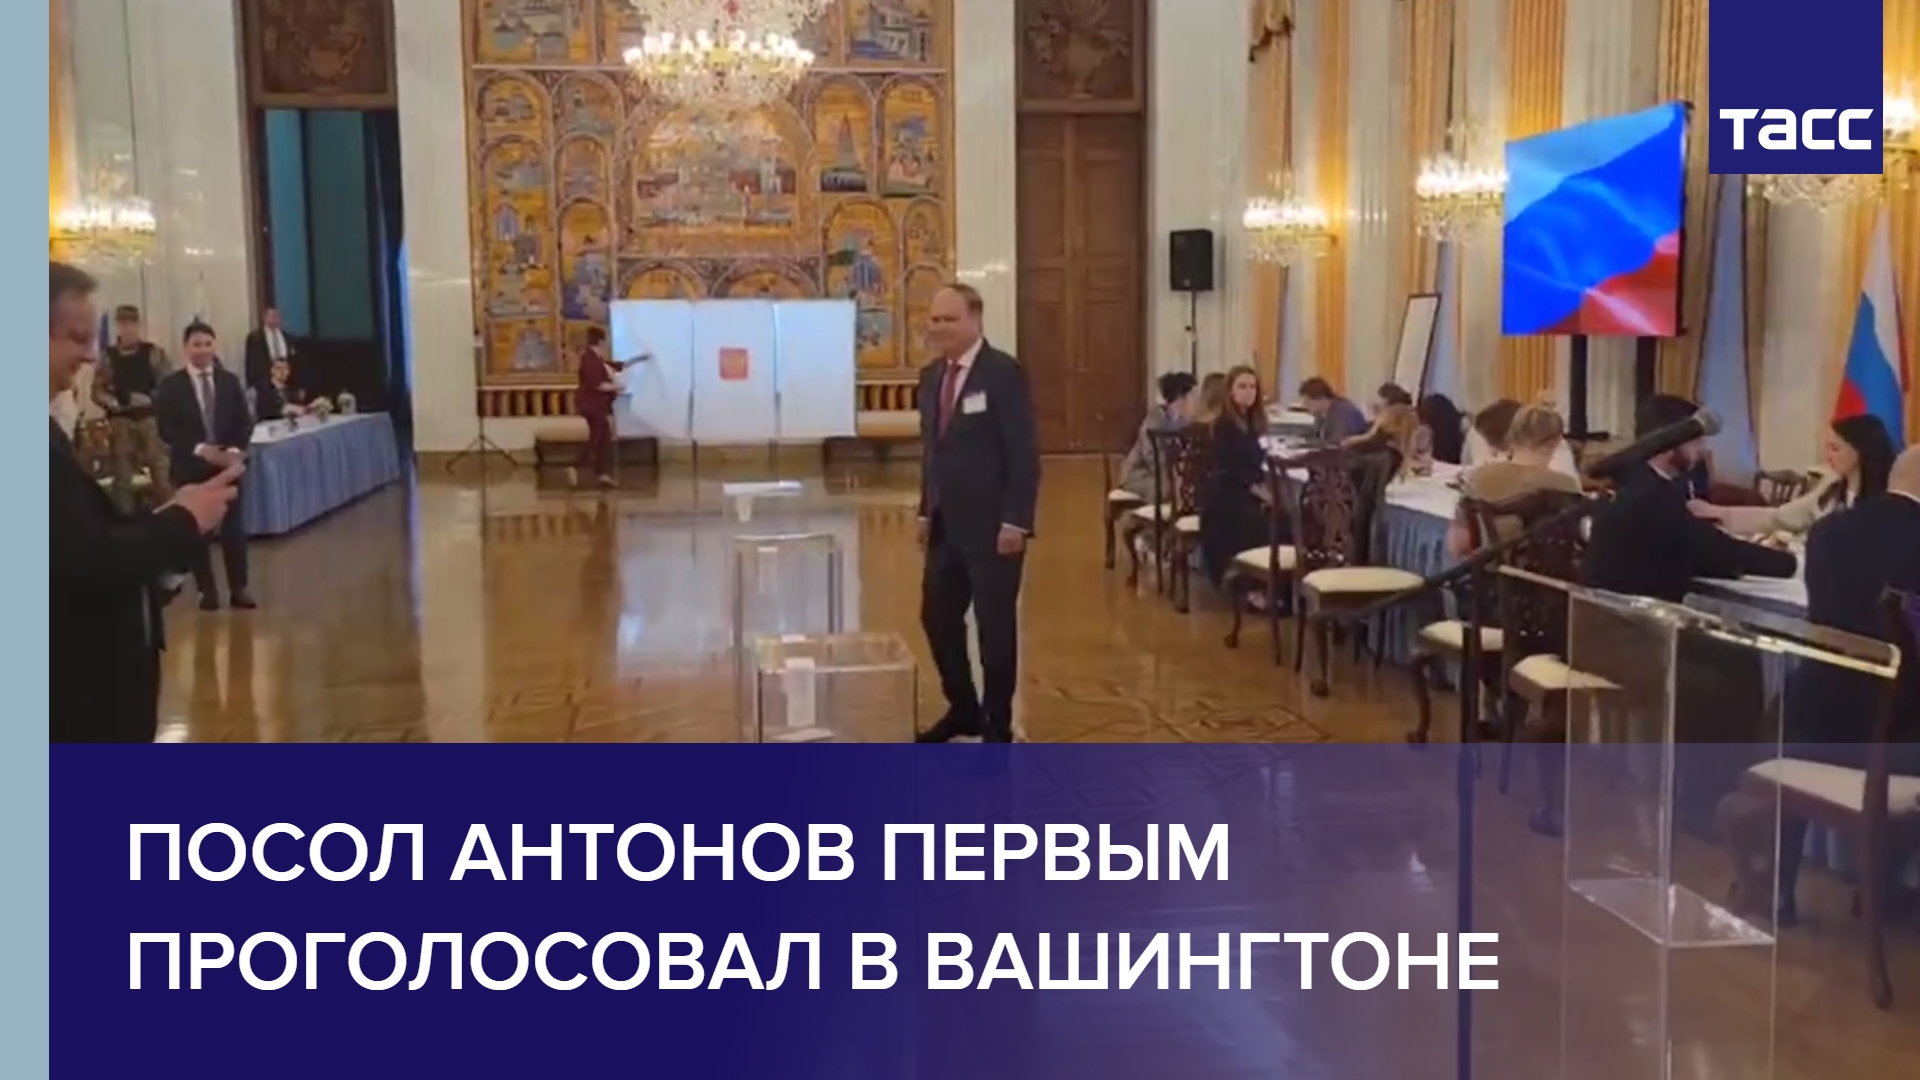 Посол Антонов первым проголосовал на участке при диппредставительстве РФ в Вашингтоне